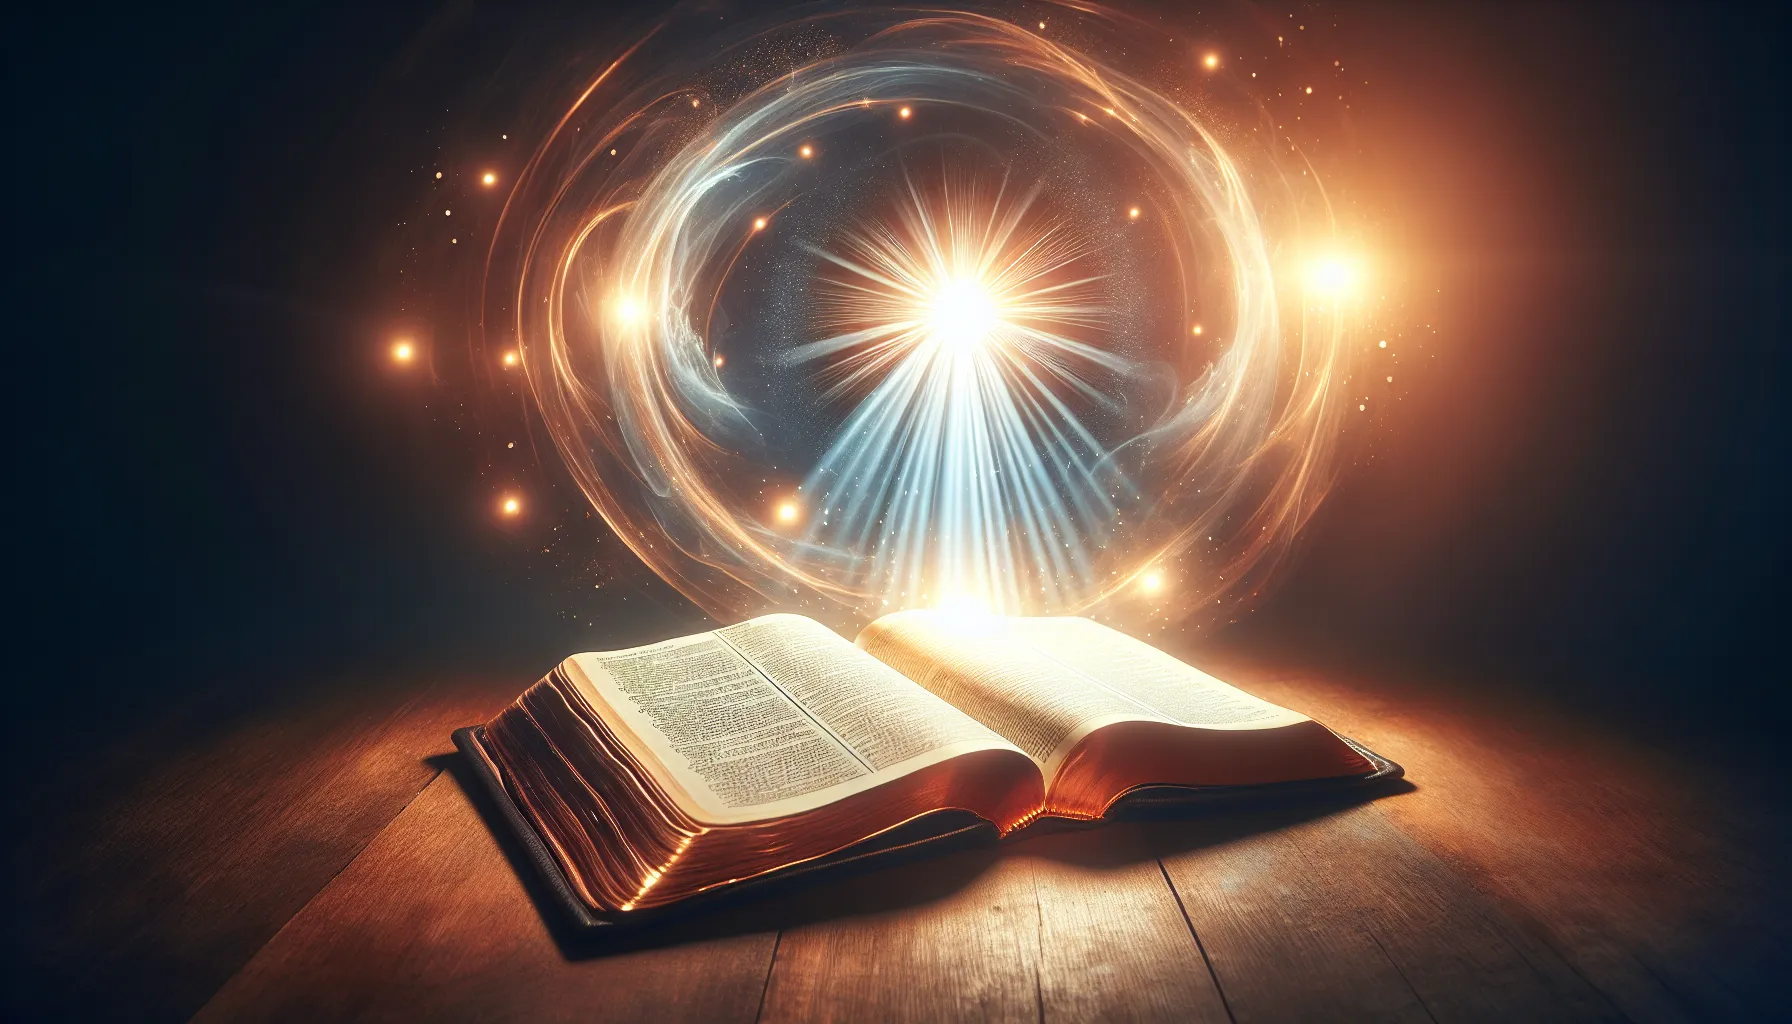 Imagen de fondo con una Biblia abierta y una luz divina brillante que ilumina las páginas